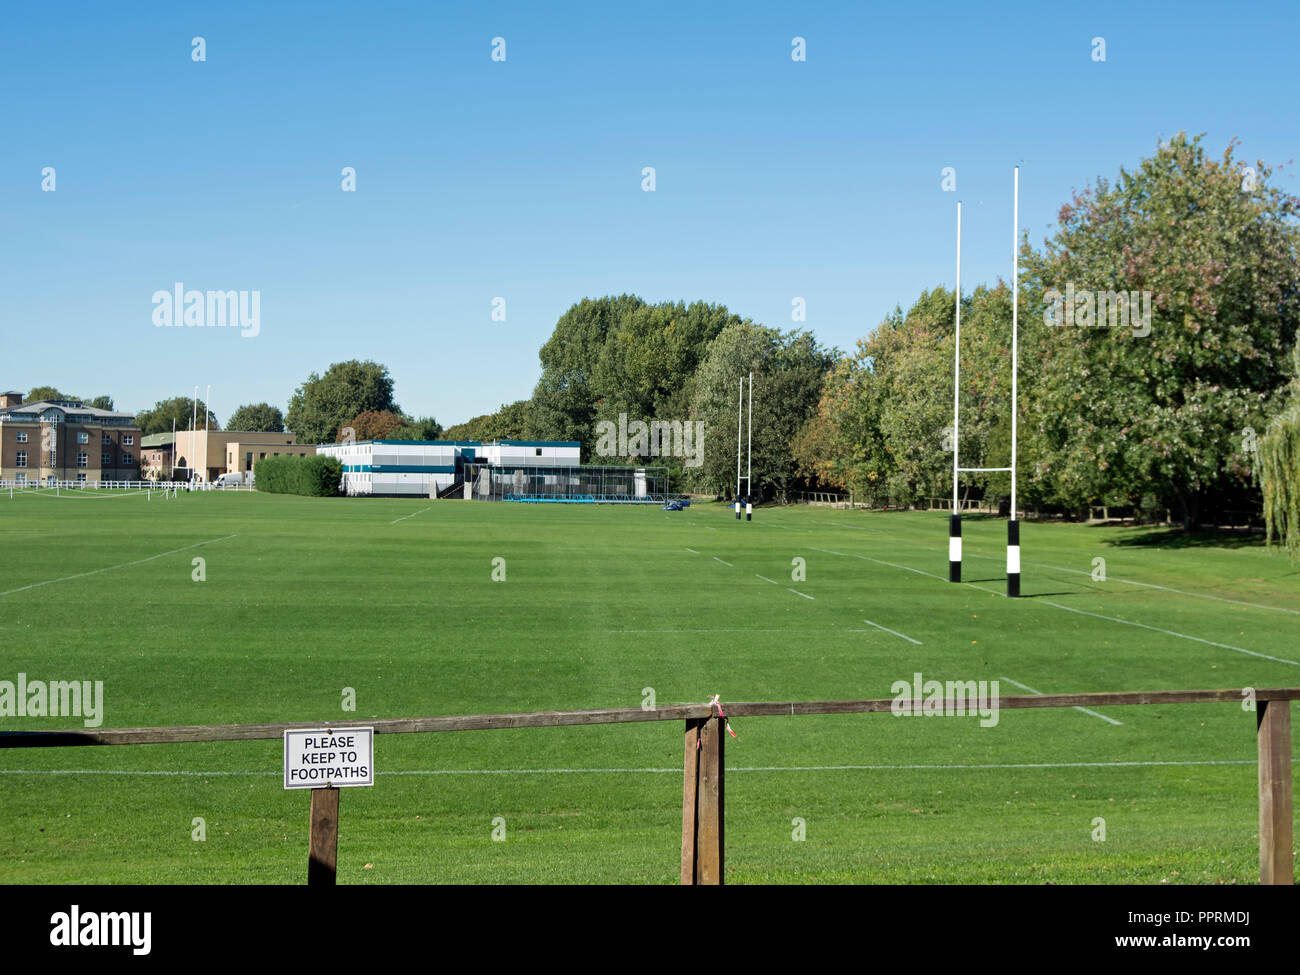 I campi da gioco a san Paolo scuola, Barnes, Londra, Inghilterra, con si prega di mantenere i sentieri sign in primo piano Foto Stock